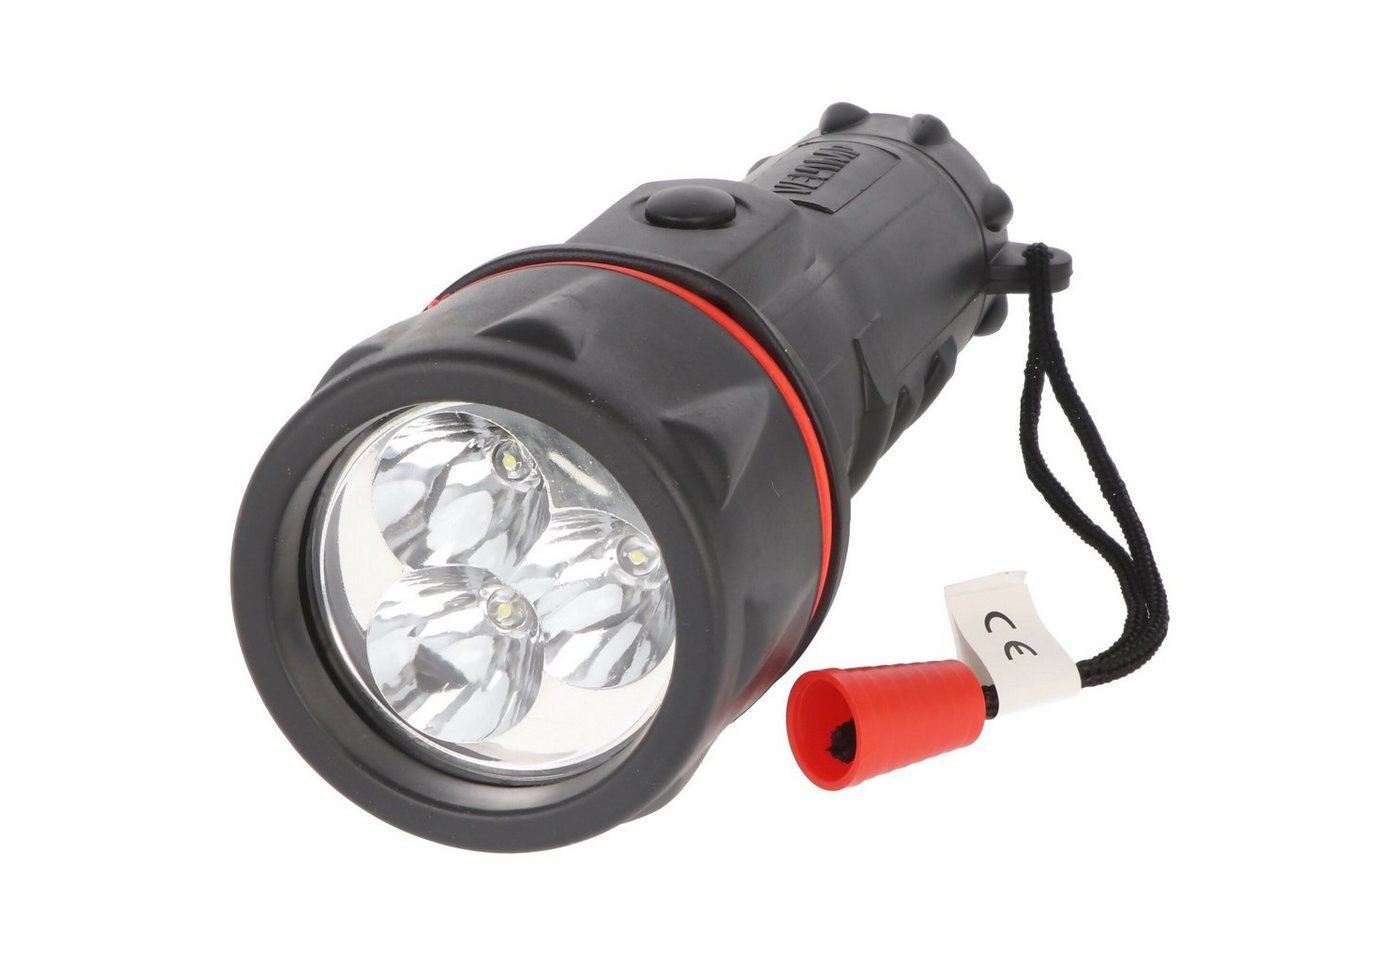 Velamp LED Taschenlampe Velamp LED Gummi-Taschenlampe, 3 LEDs, wasserdicht, mit Handschlaufe von Velamp